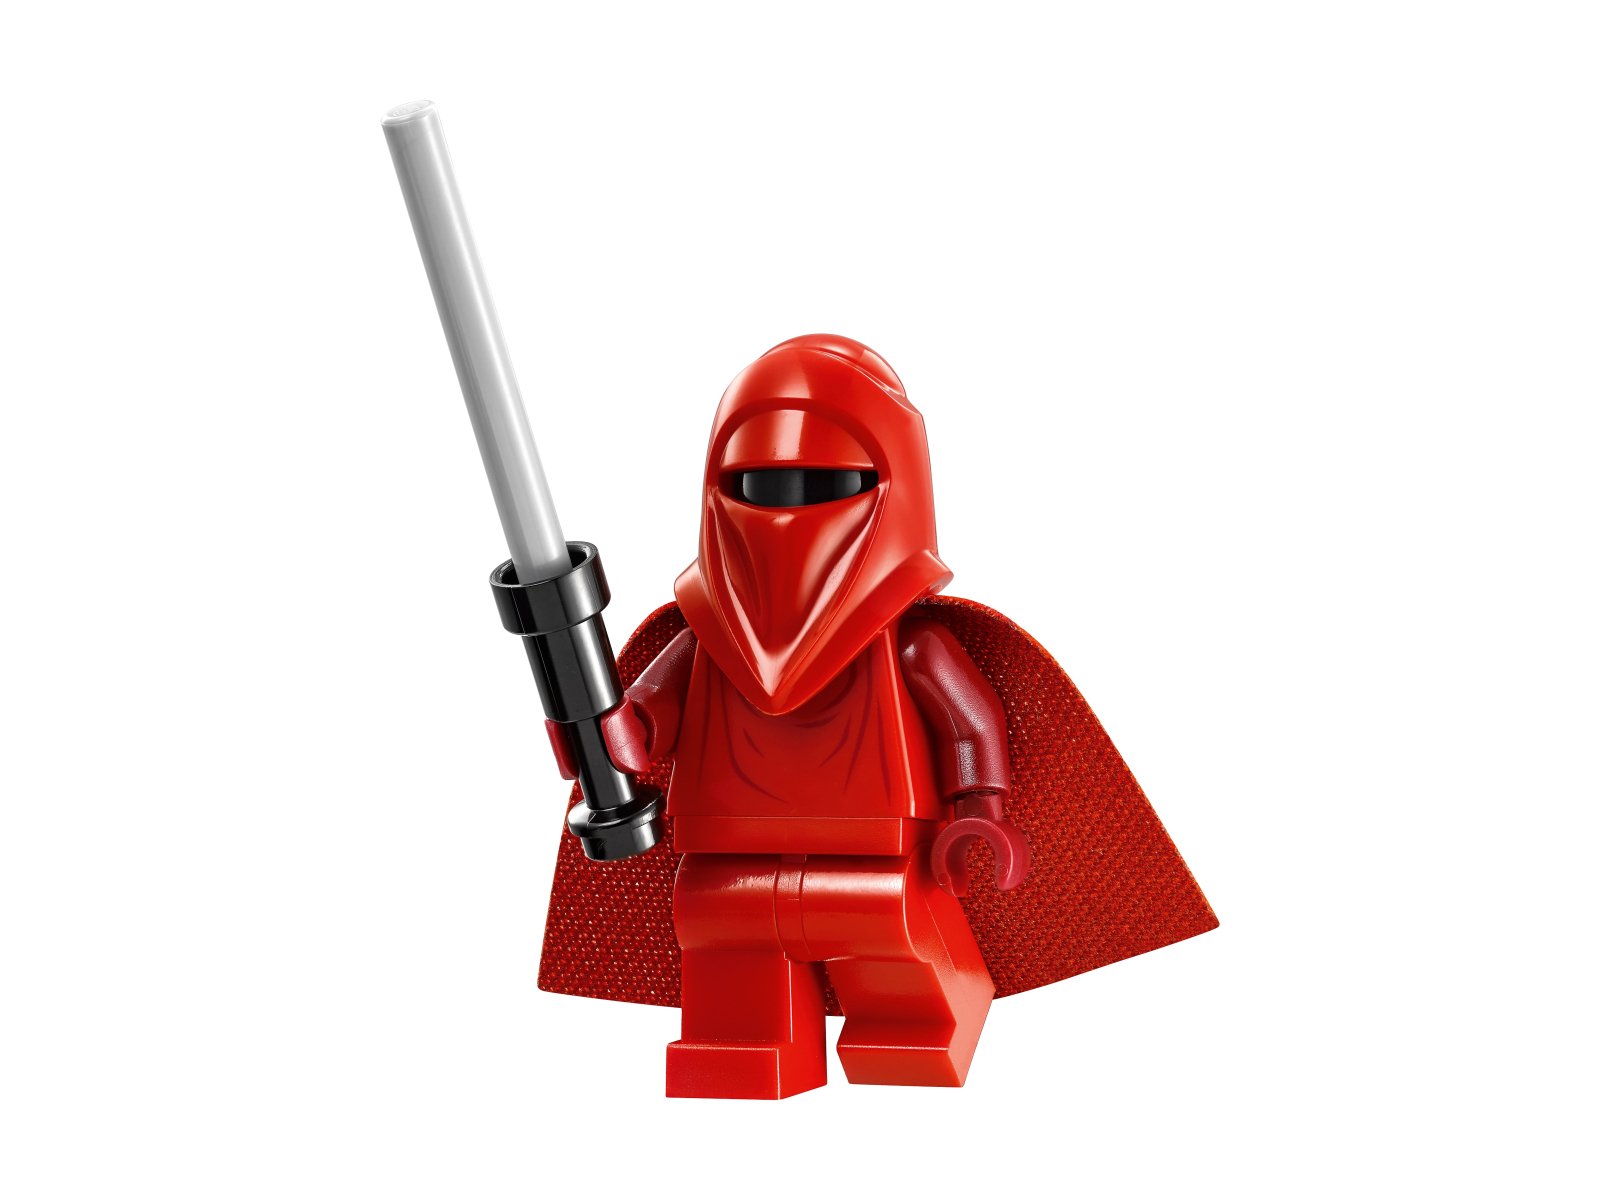 LEGO Star Wars Gwiazda Śmierci 75159